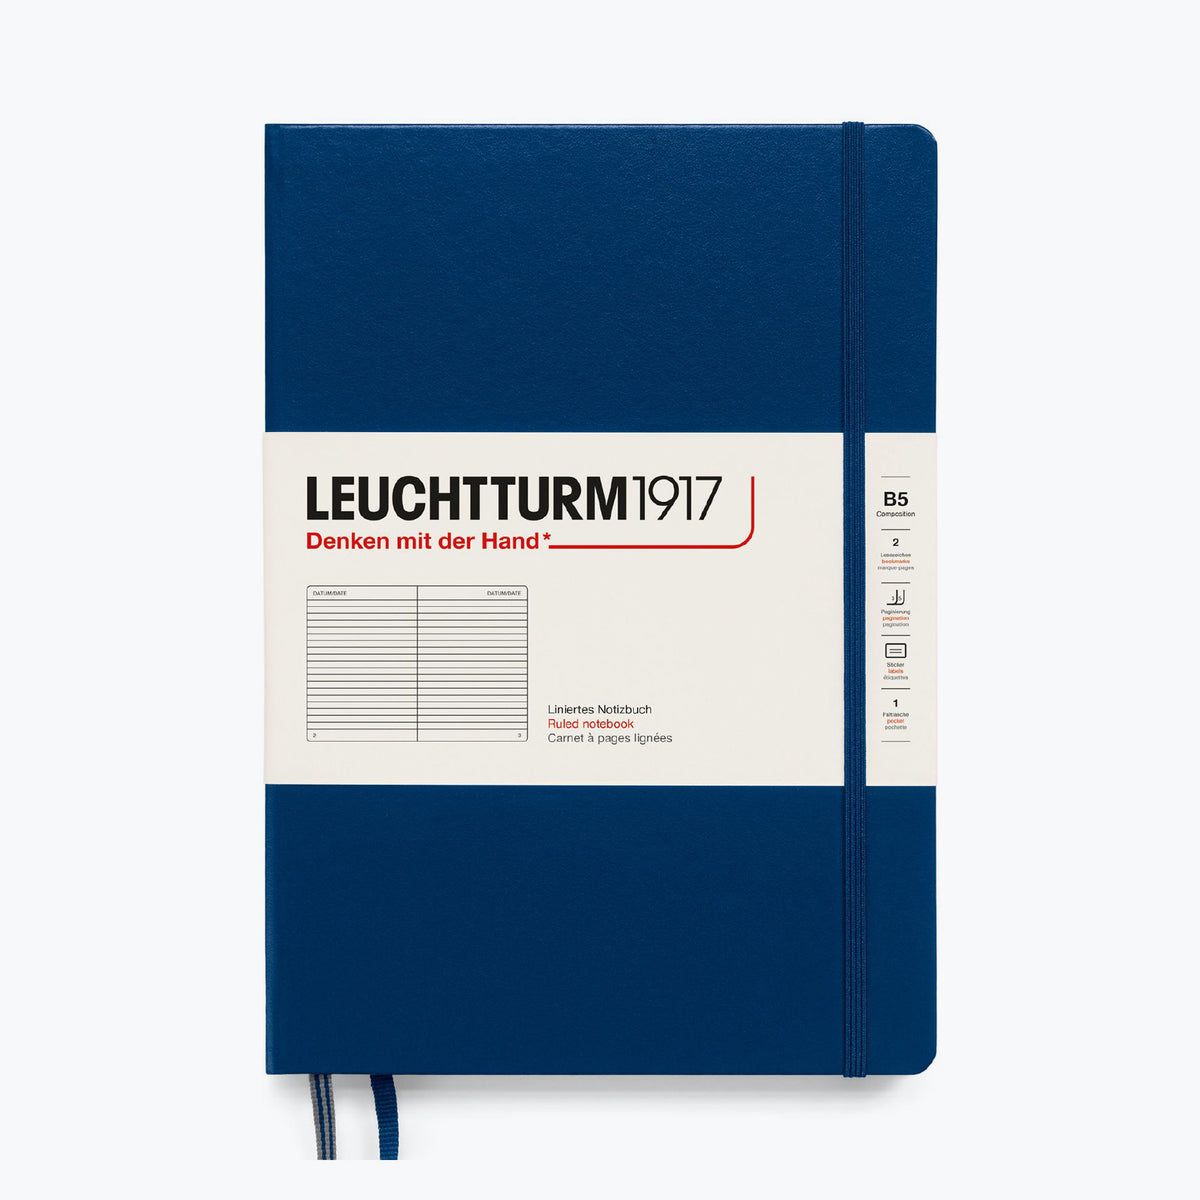 Leuchtturm1917 - Notebook - Hardcover - B5 - Navy